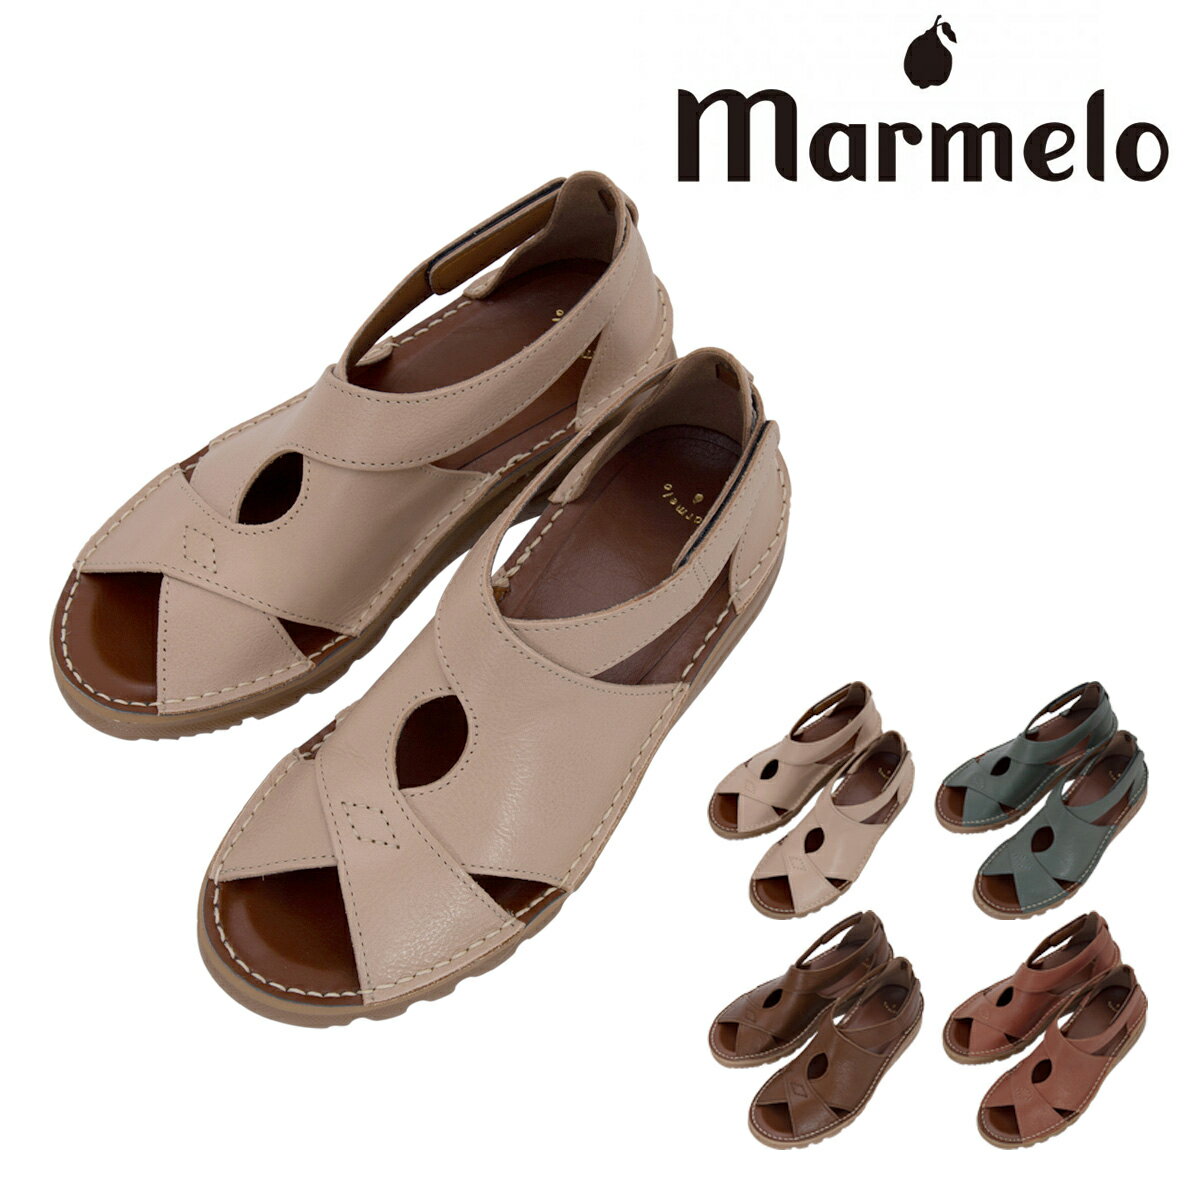 マルメロ クロスサンダル 日本製 レディース 06-04-30005 marmelo 靴 シューズ レザー[PO10]